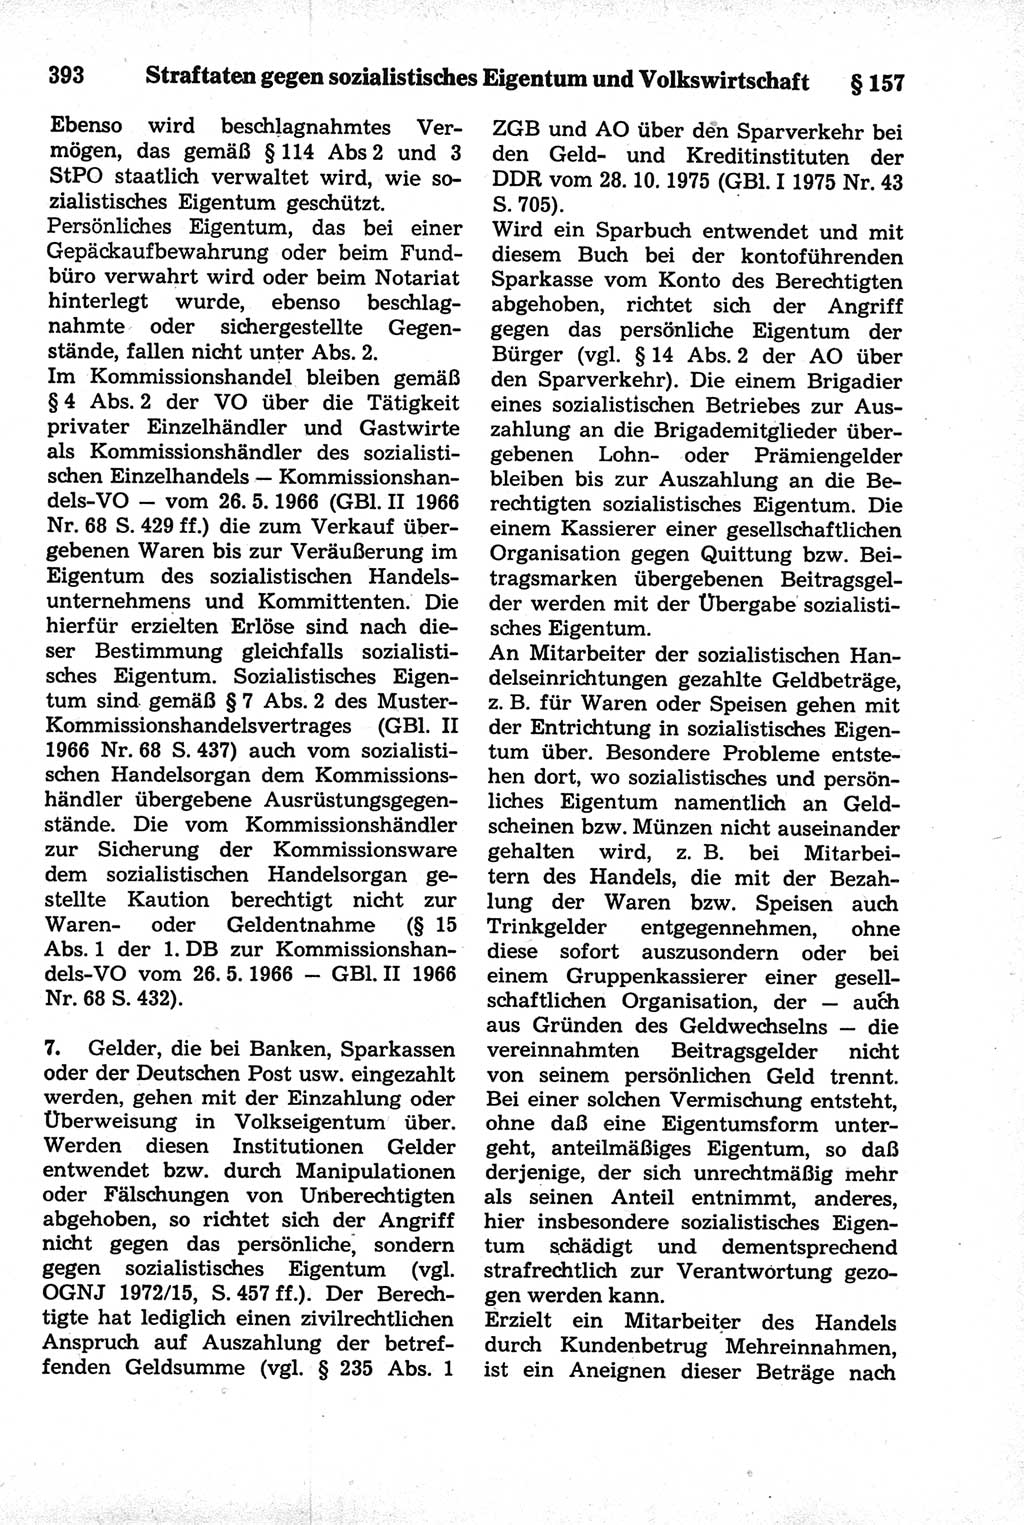 Strafrecht der Deutschen Demokratischen Republik (DDR), Kommentar zum Strafgesetzbuch (StGB) 1981, Seite 393 (Strafr. DDR Komm. StGB 1981, S. 393)